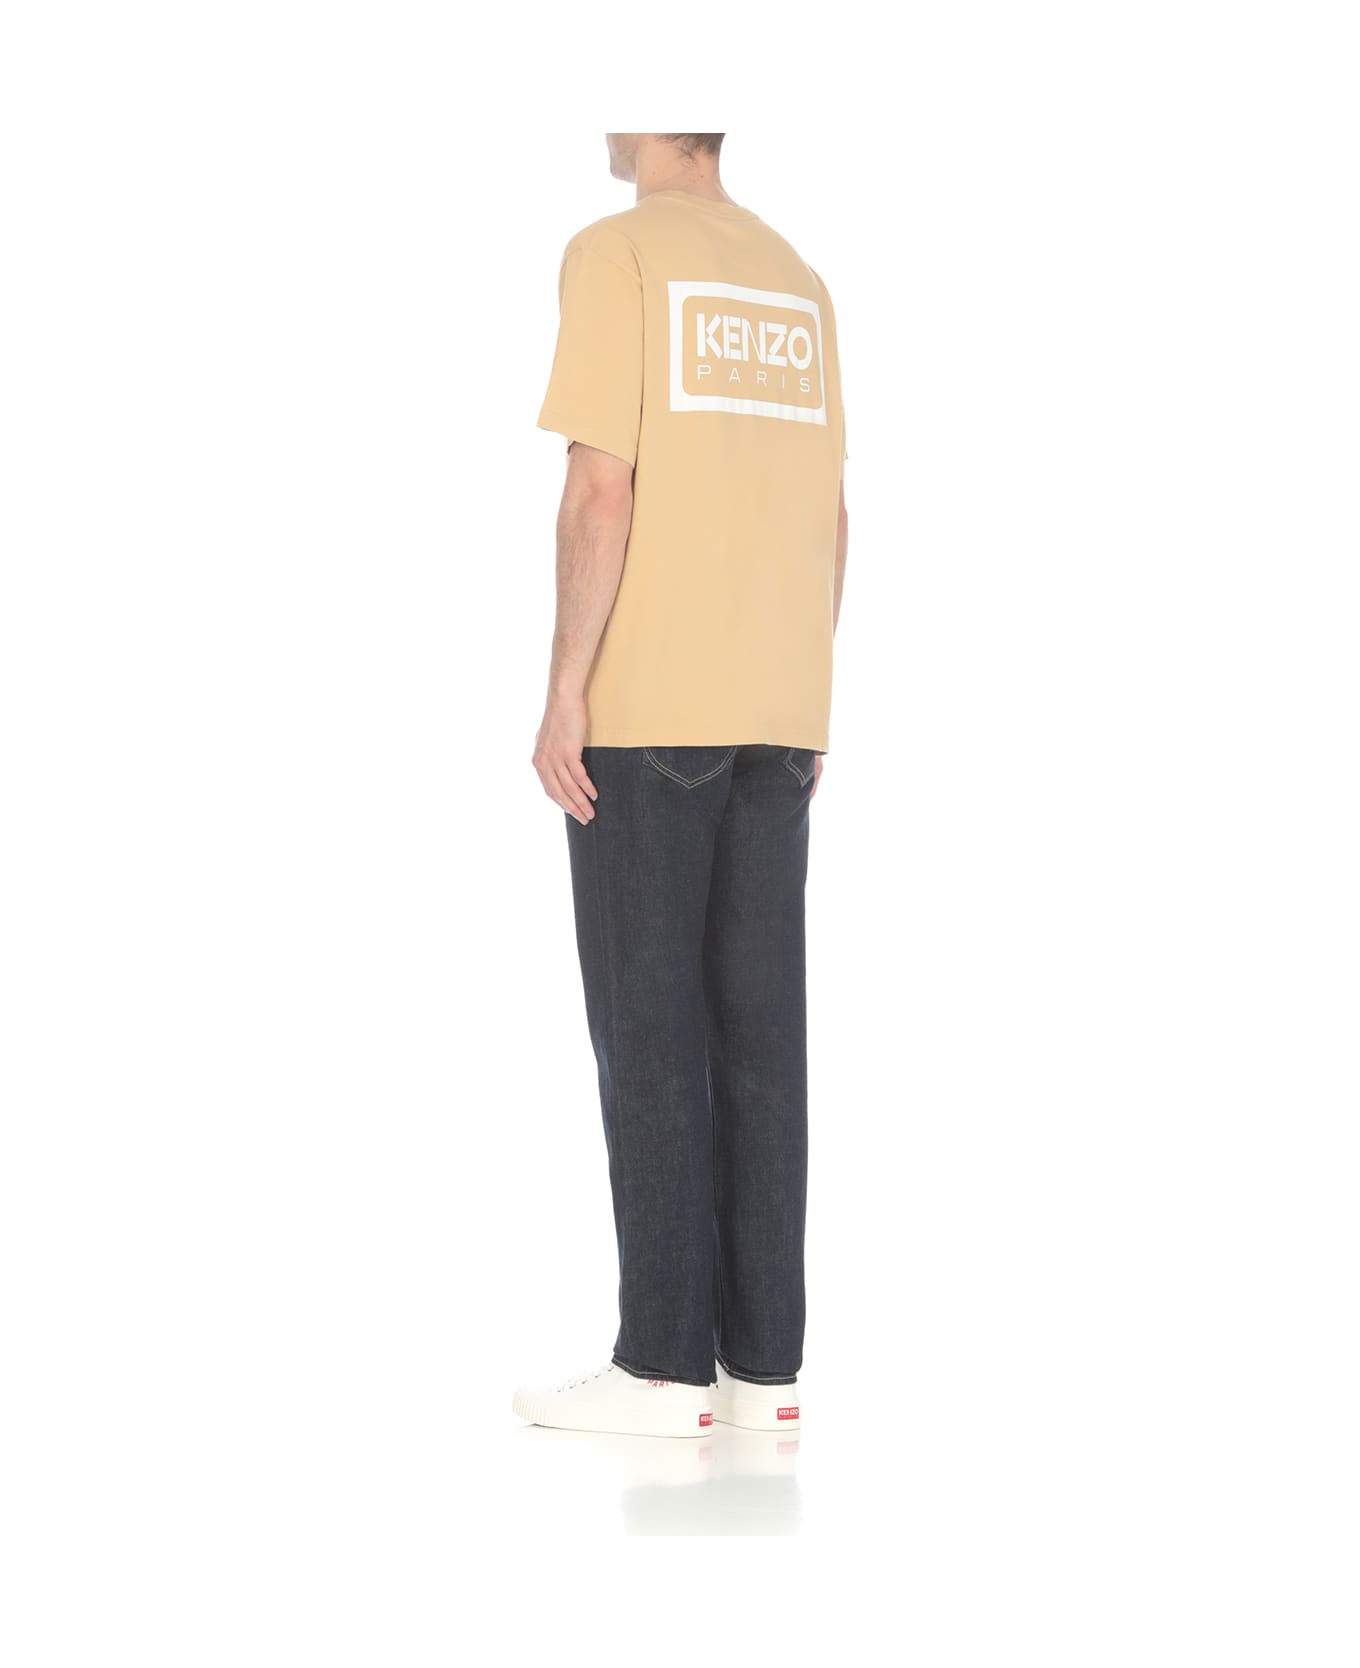 Kenzo Bicolor T-shirt - Beige